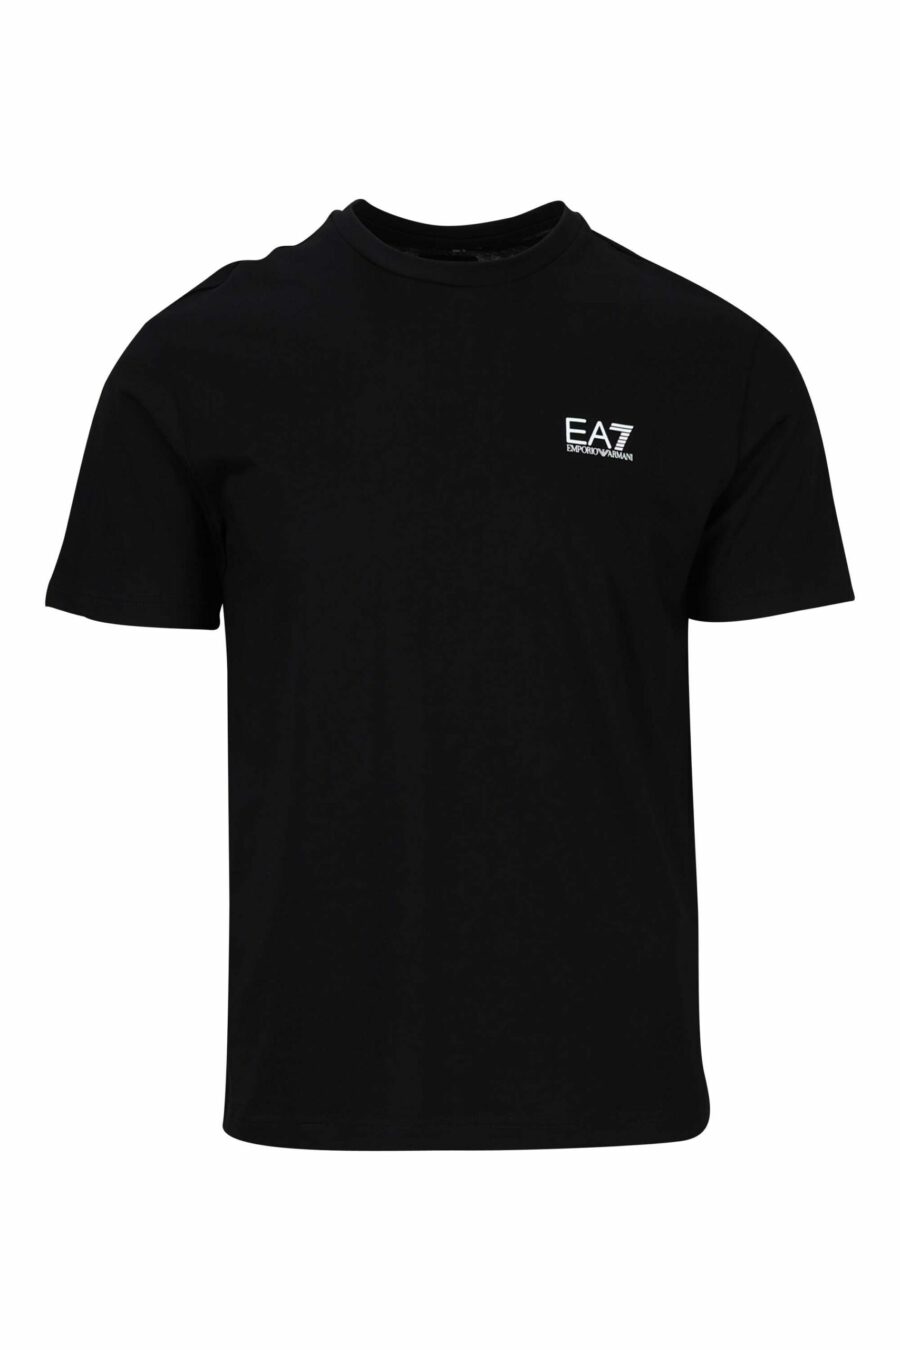 Schwarzes T-Shirt mit vertikalem "lux identity" Maxilogo auf dem Rücken - 8058947452668 skaliert